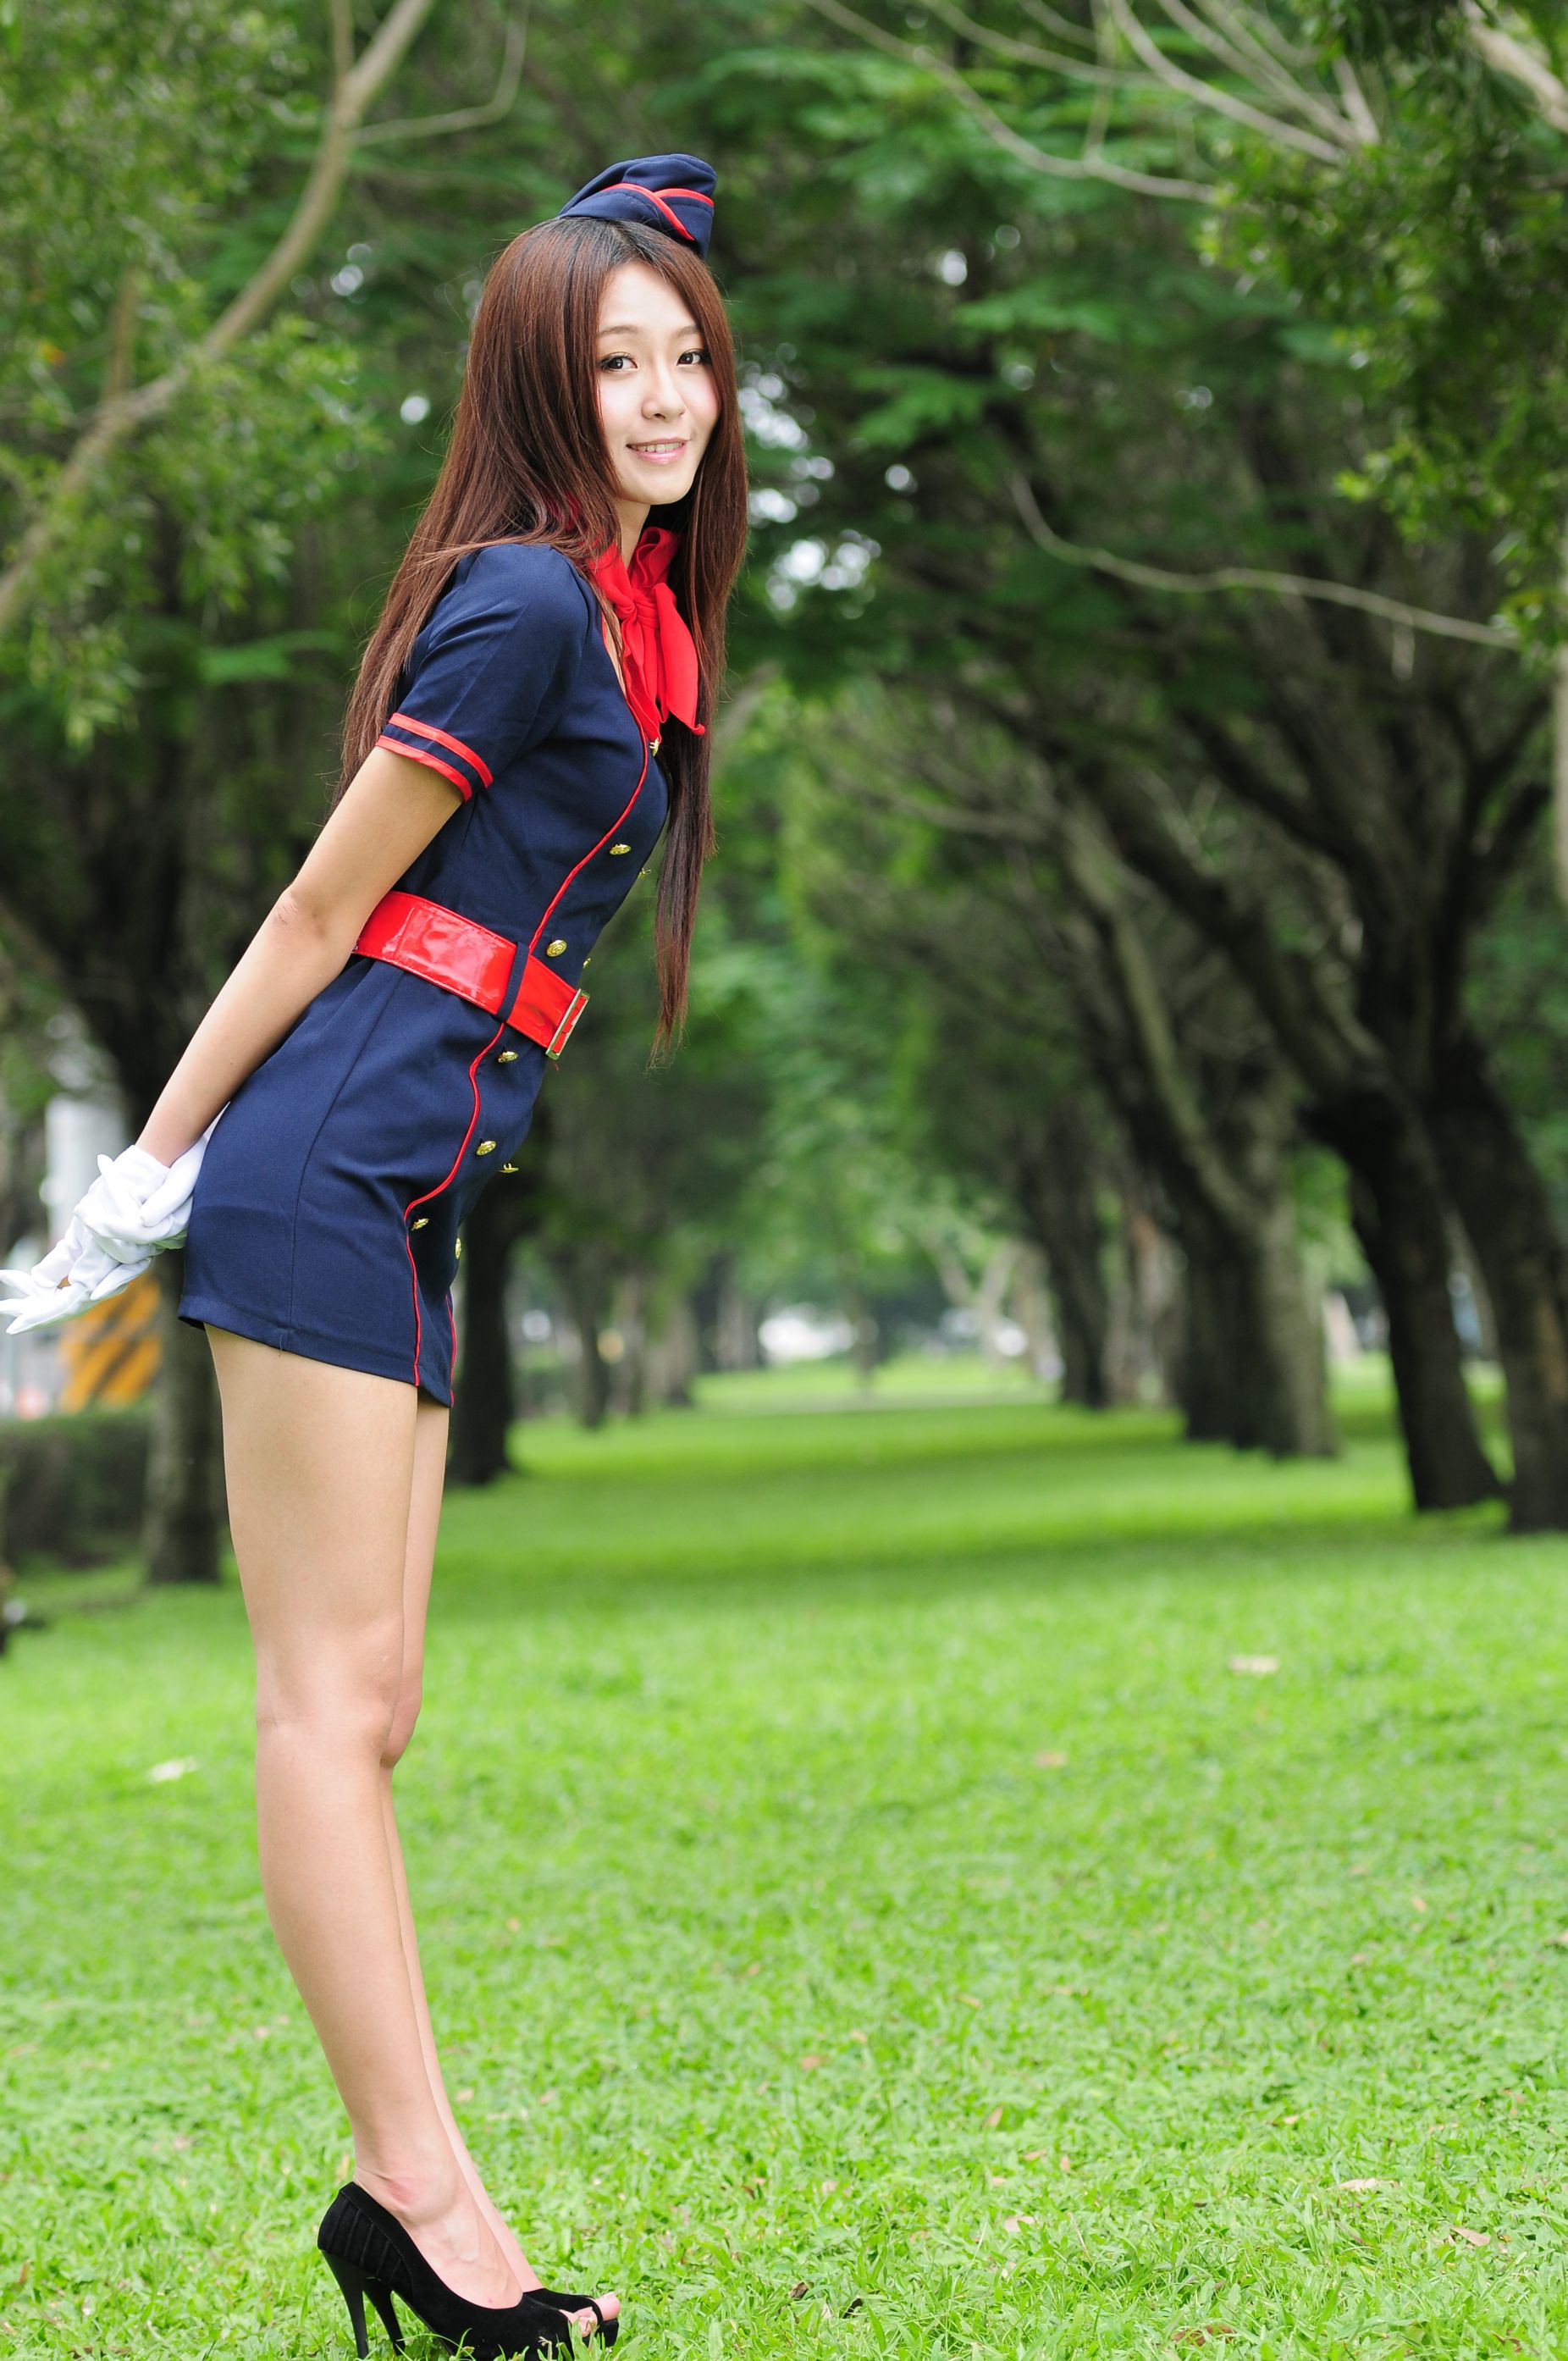 Winnie Snow / Zhuang Yuhui “Small Qingxin School Uniforms” Photo Album